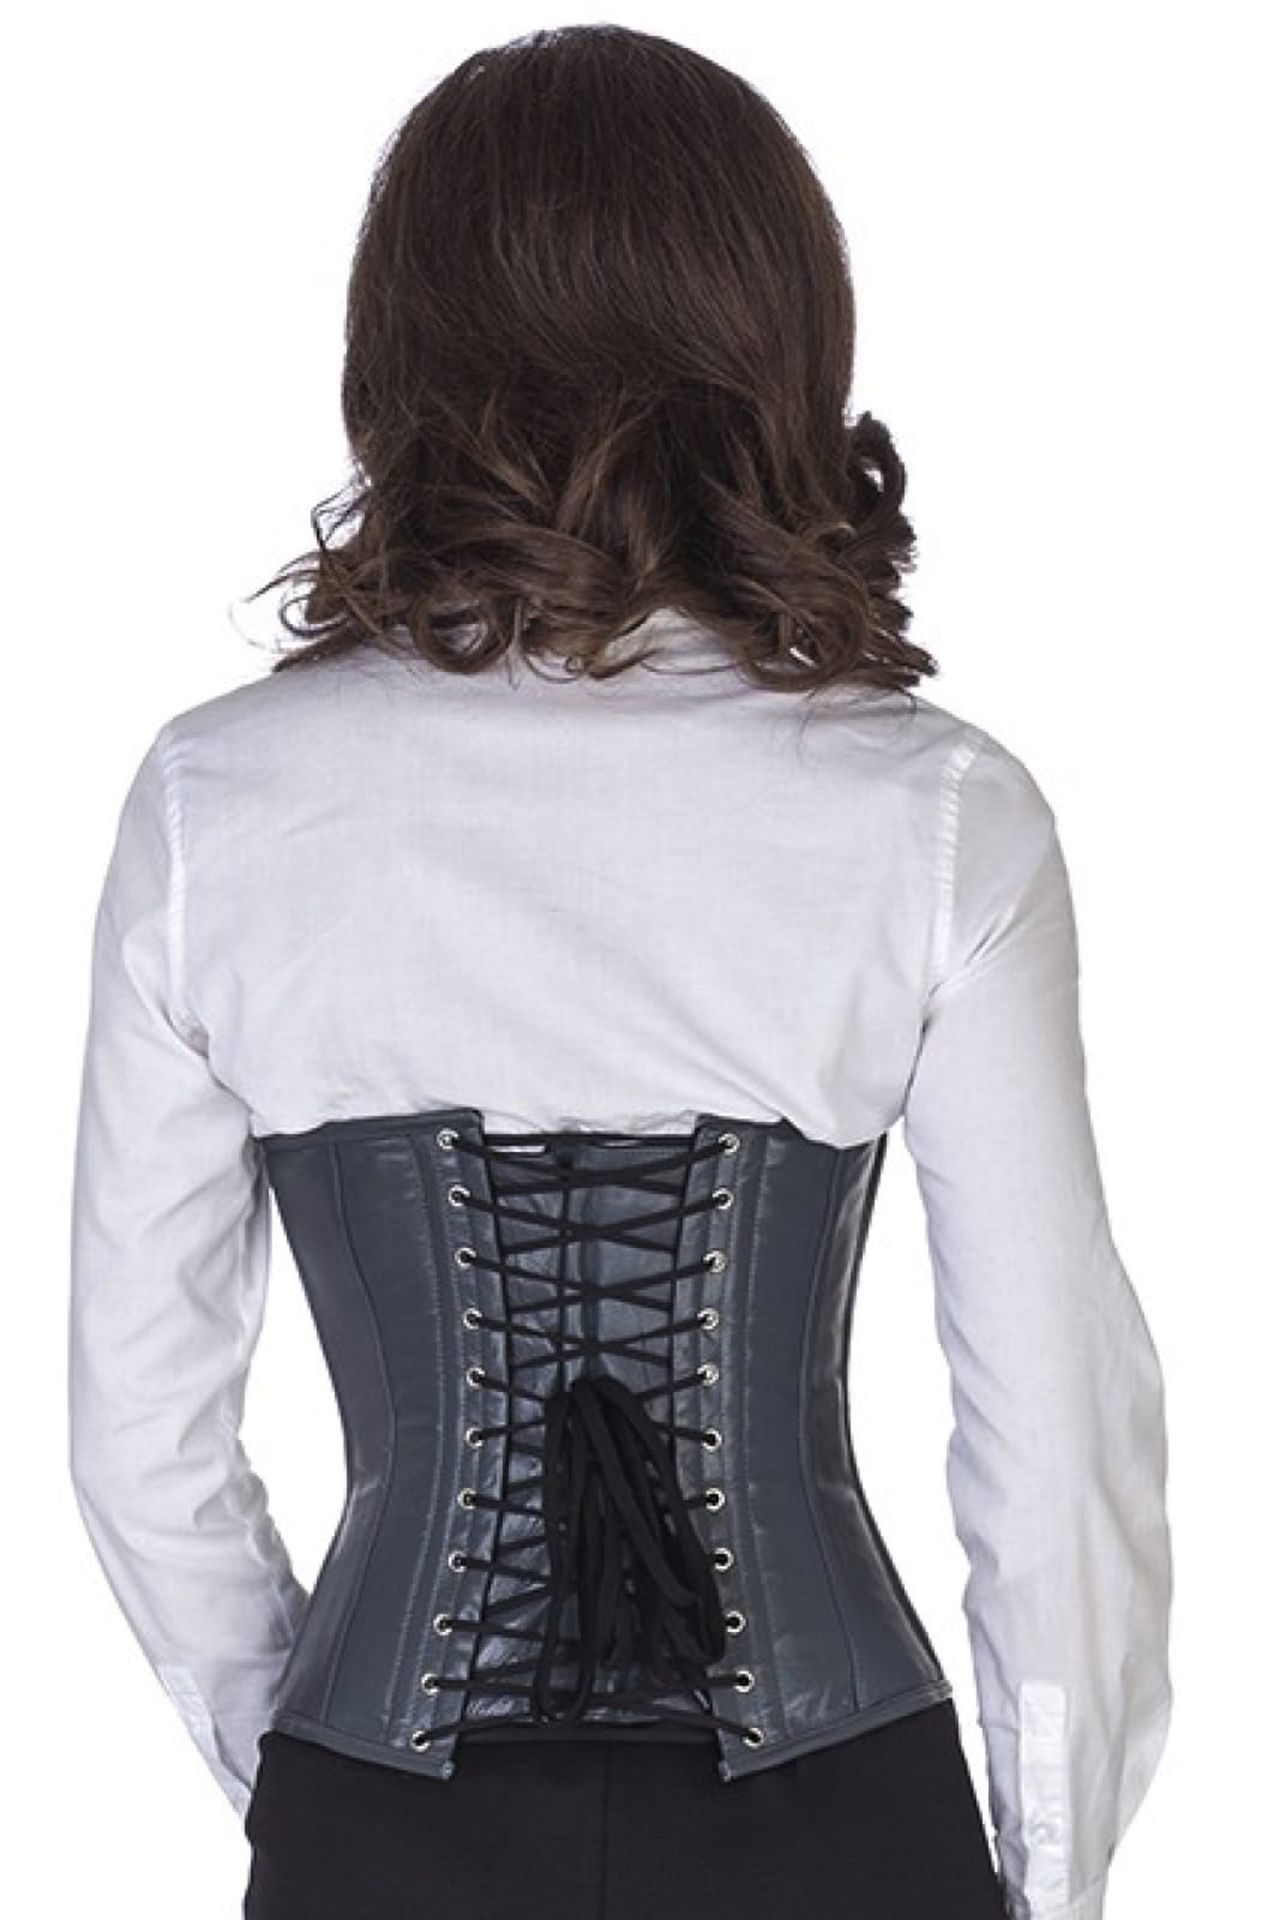 Leren corset grijze taille Korset lw34